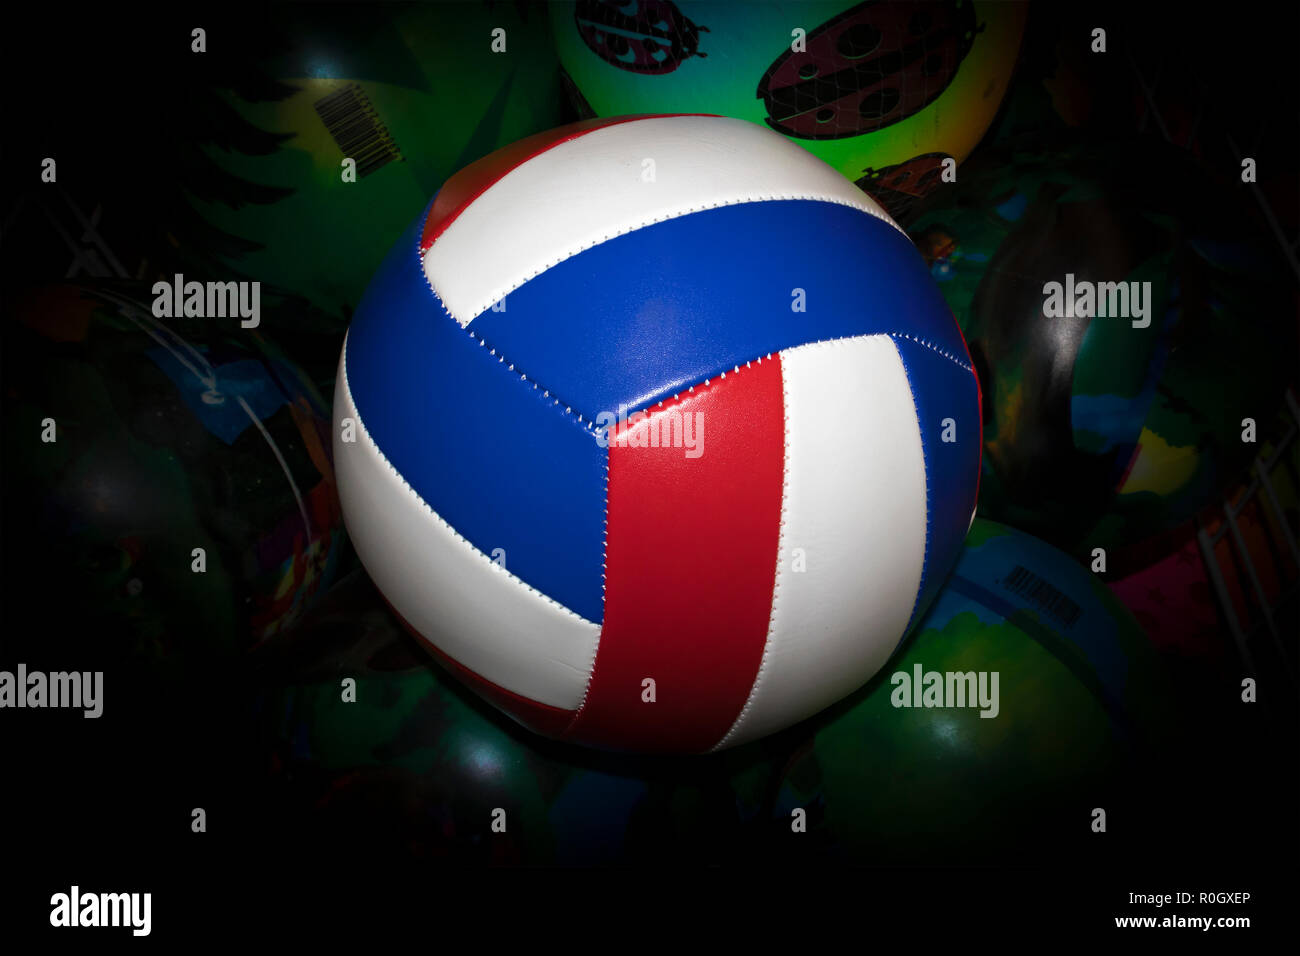 Striped volley-ball balle contre peint en vert avec des boules de vignette sombre Banque D'Images